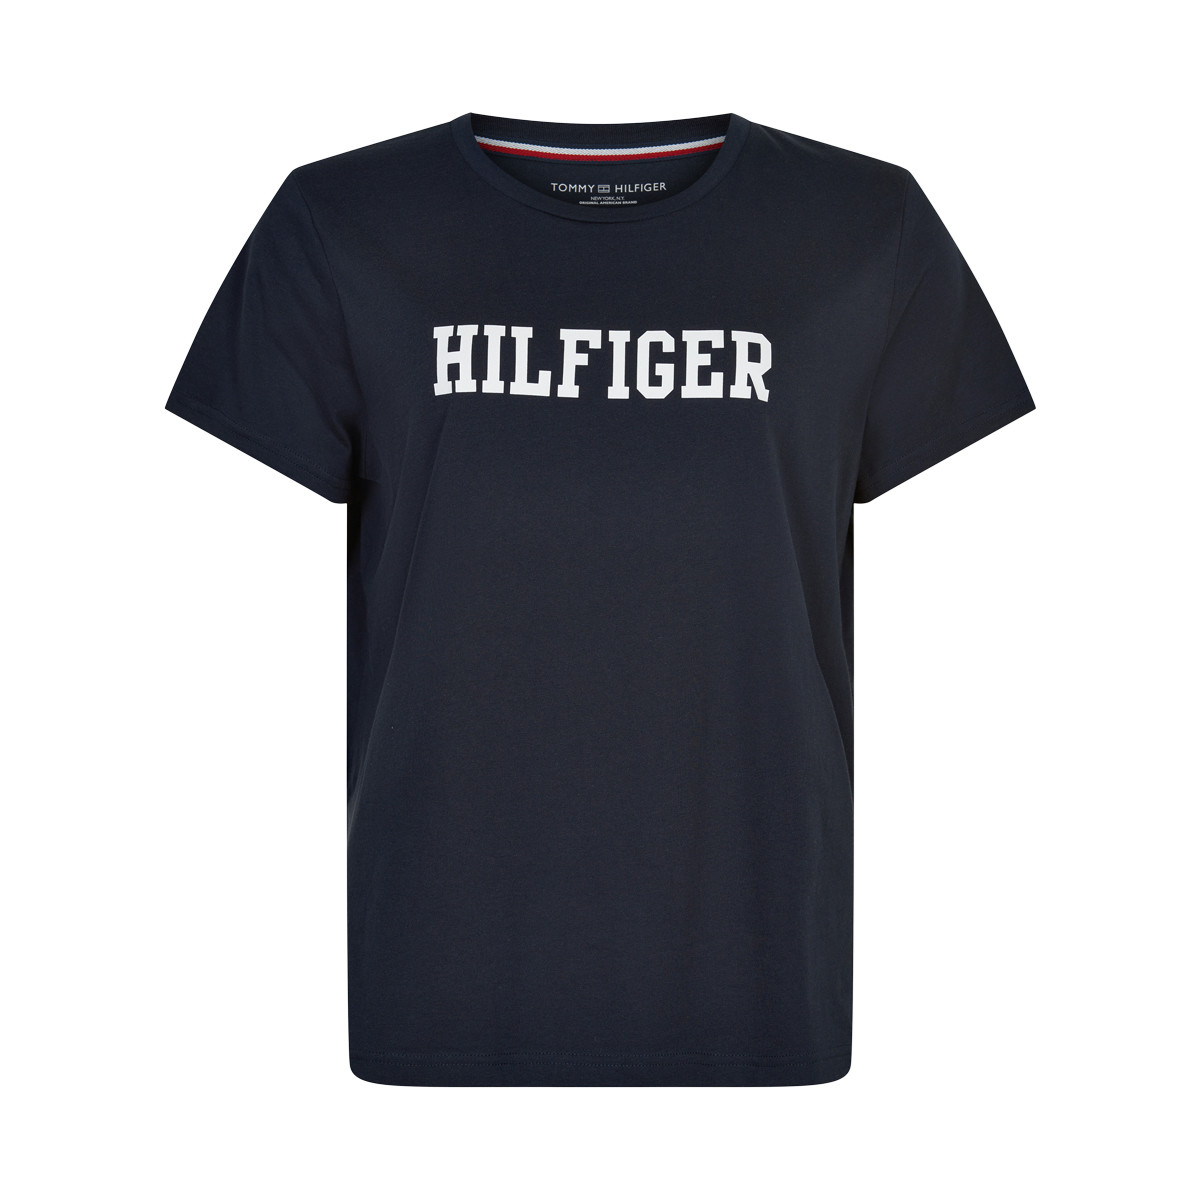 #3 - Tommy Hilfiger Cn T-shirt, Farve: Sort, Størrelse: S, Dame